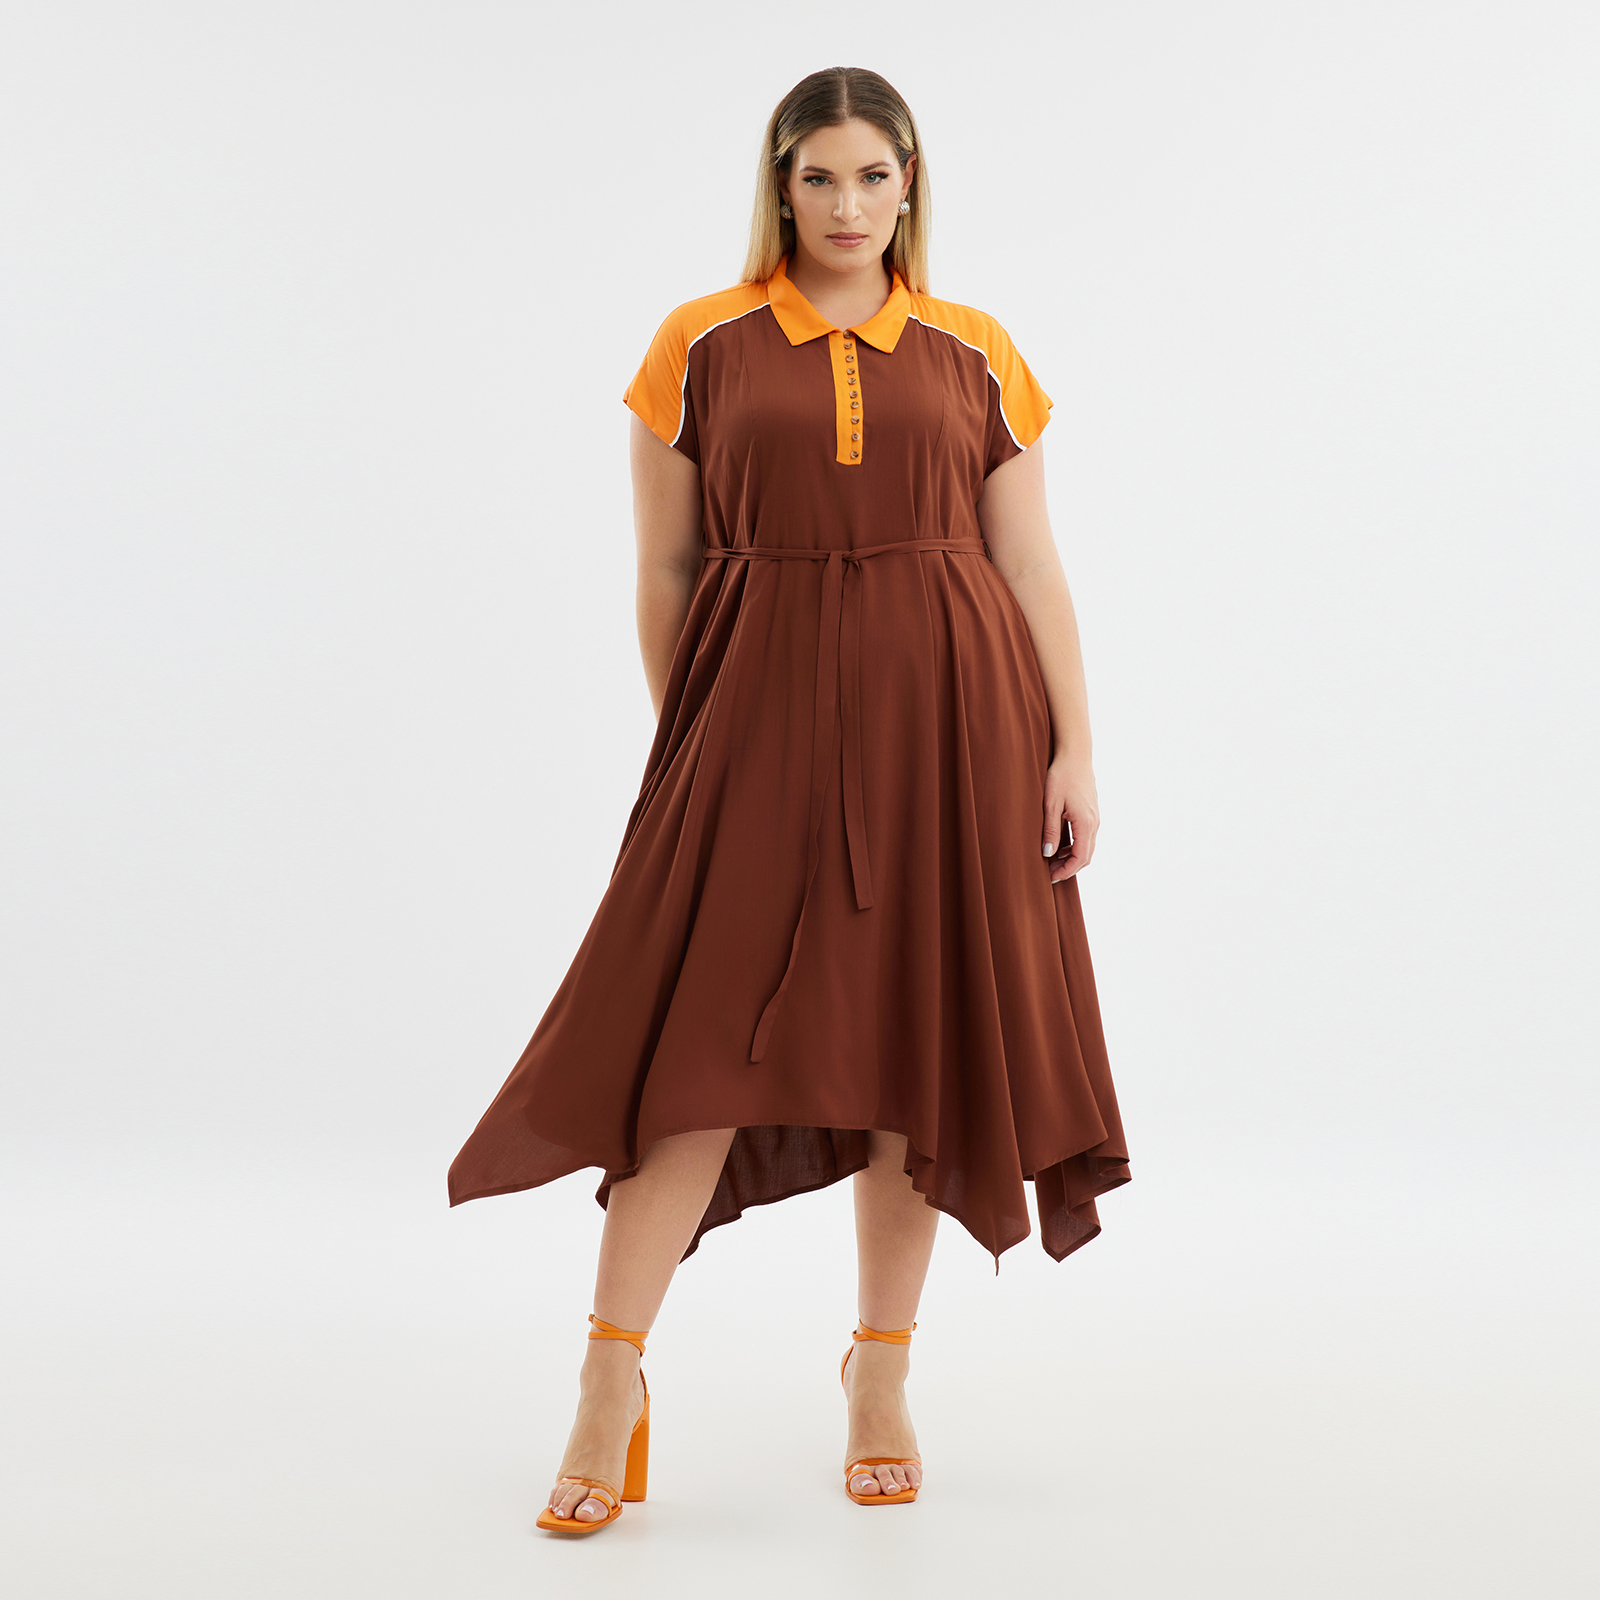 Φόρεμα βισκόζη με διχρωμία 8101.7205-brown